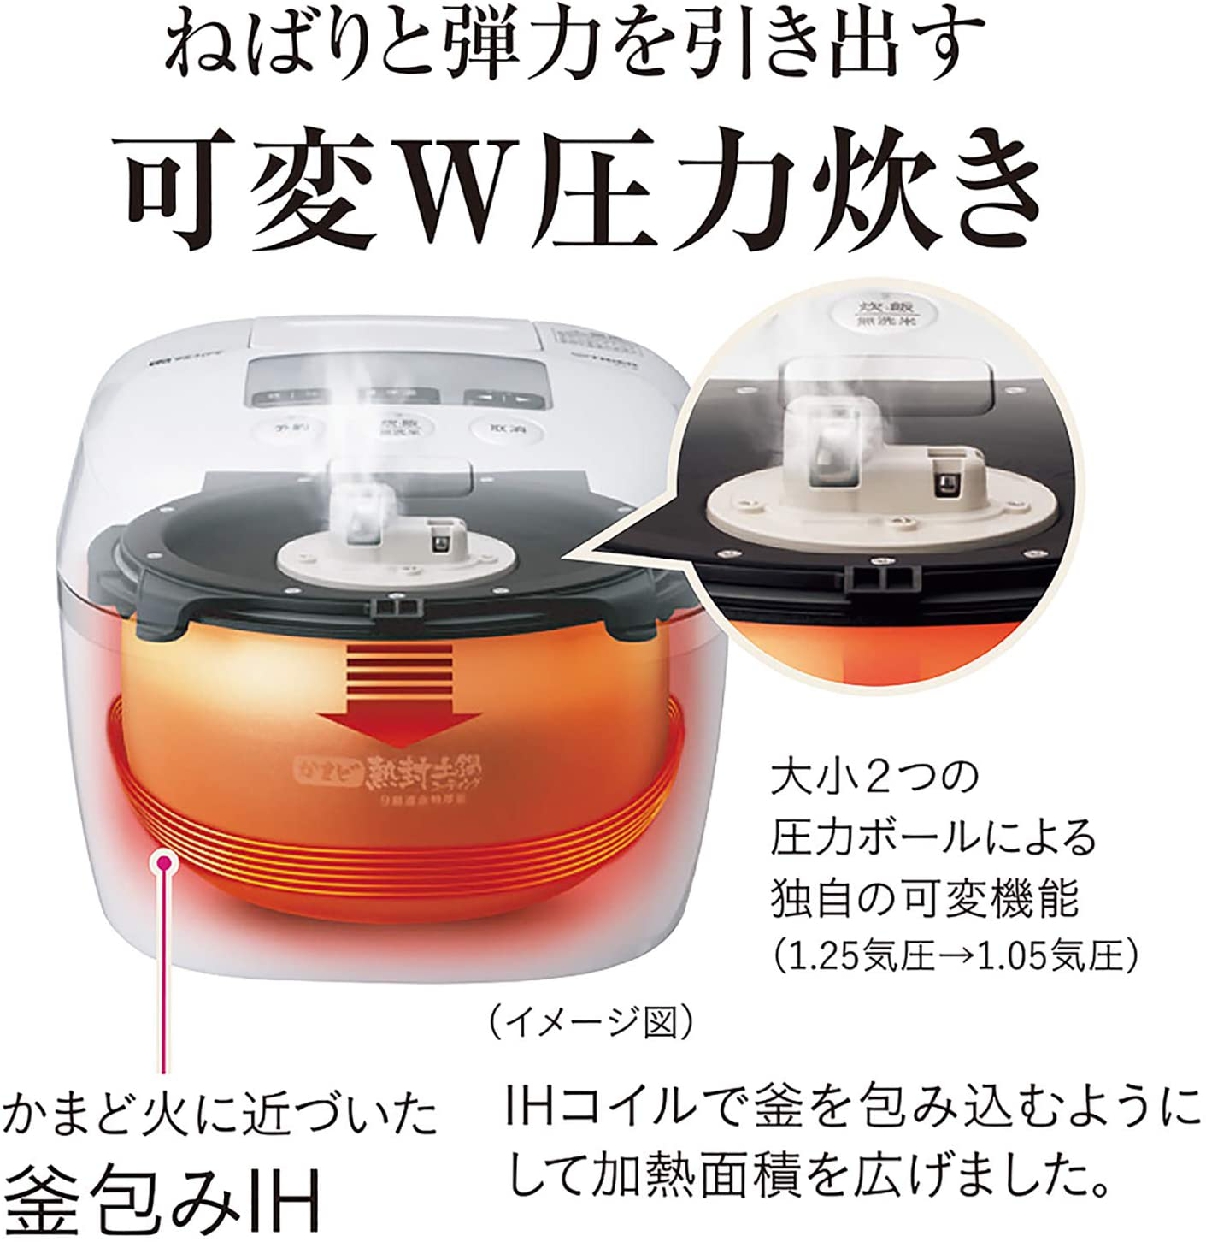 タイガー魔法瓶(TIGER) 圧力IHジャー炊飯器 JPC-G100-WAの商品画像サムネ2 